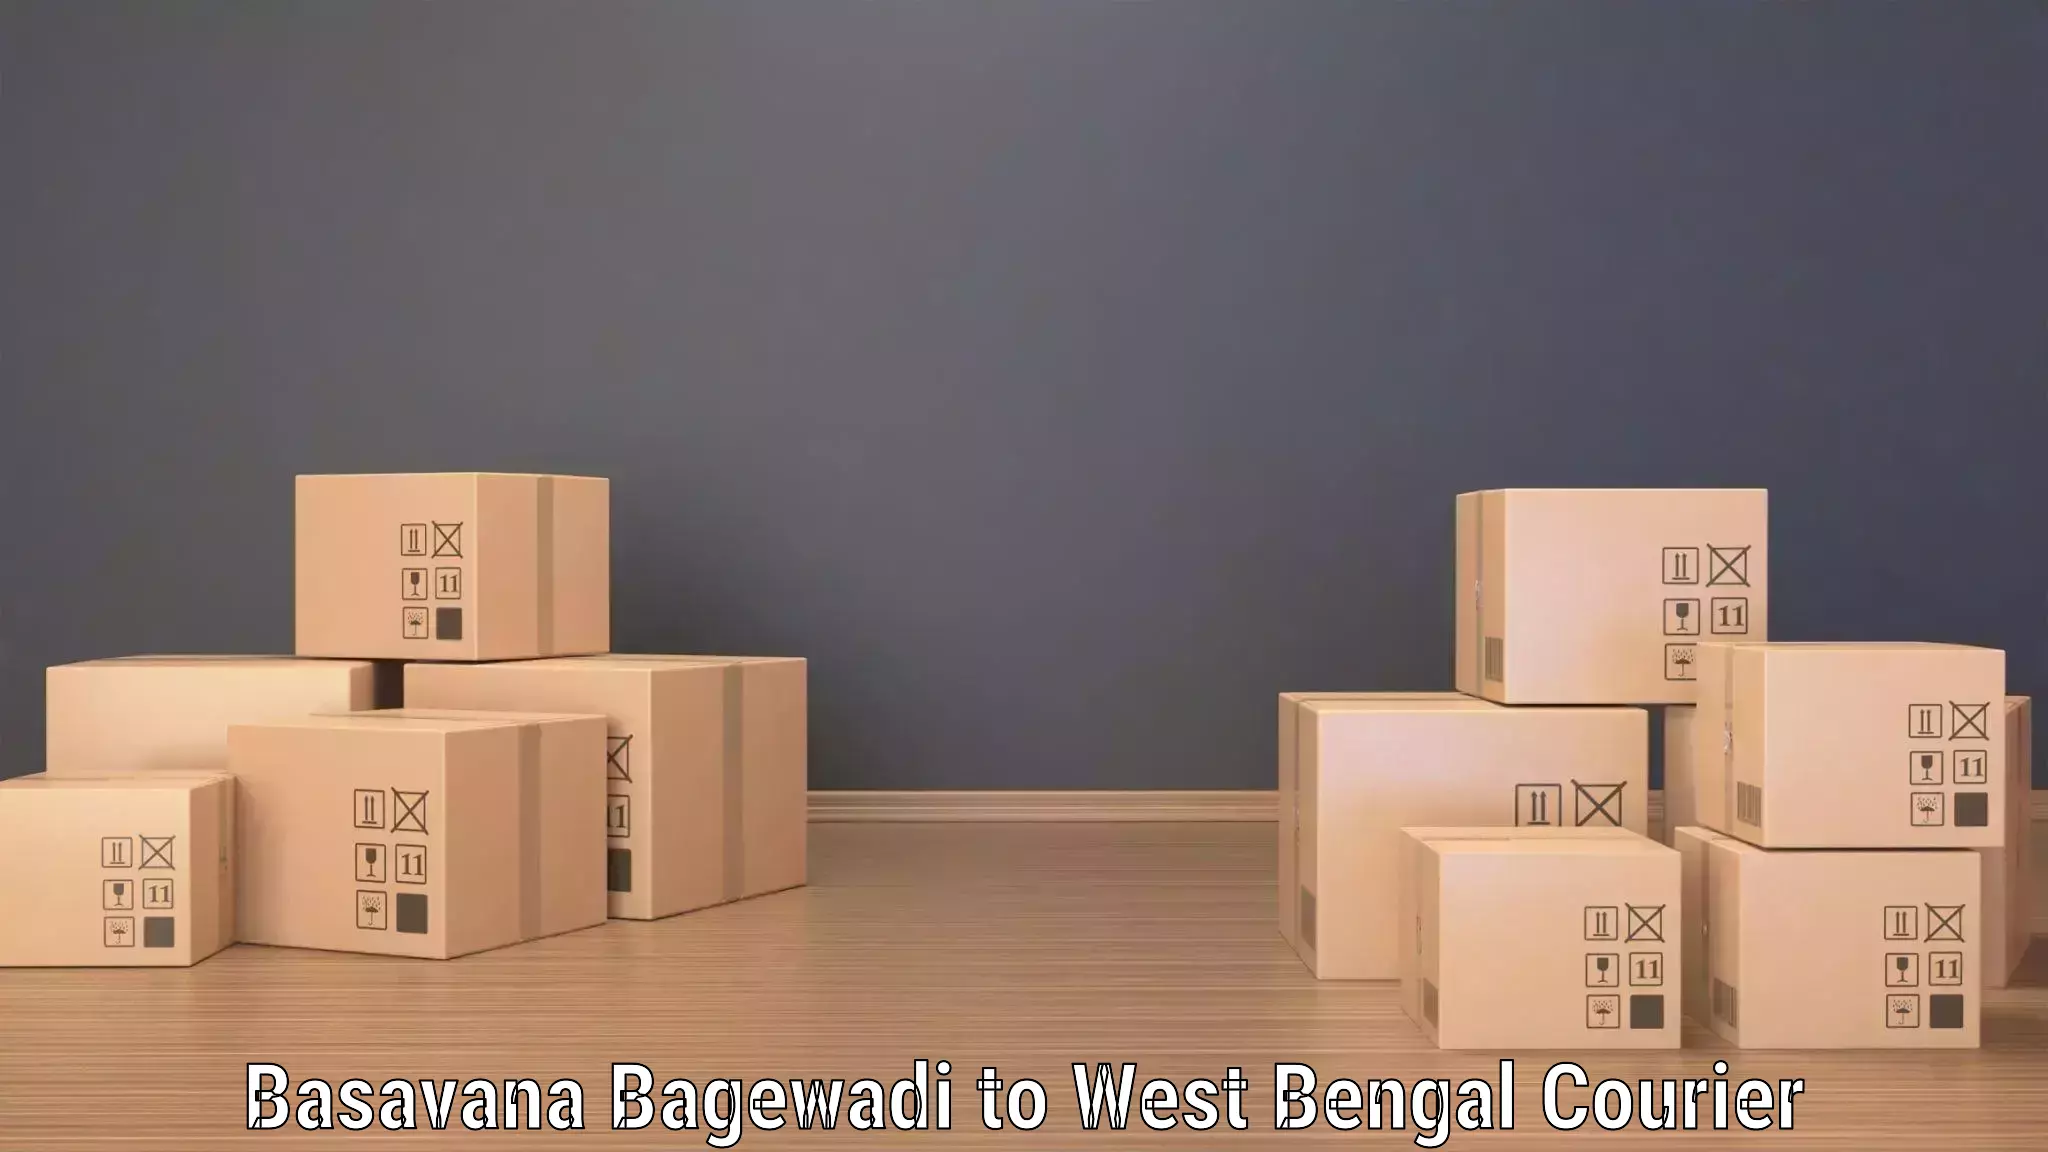 Cargo delivery service Basavana Bagewadi to Asansol